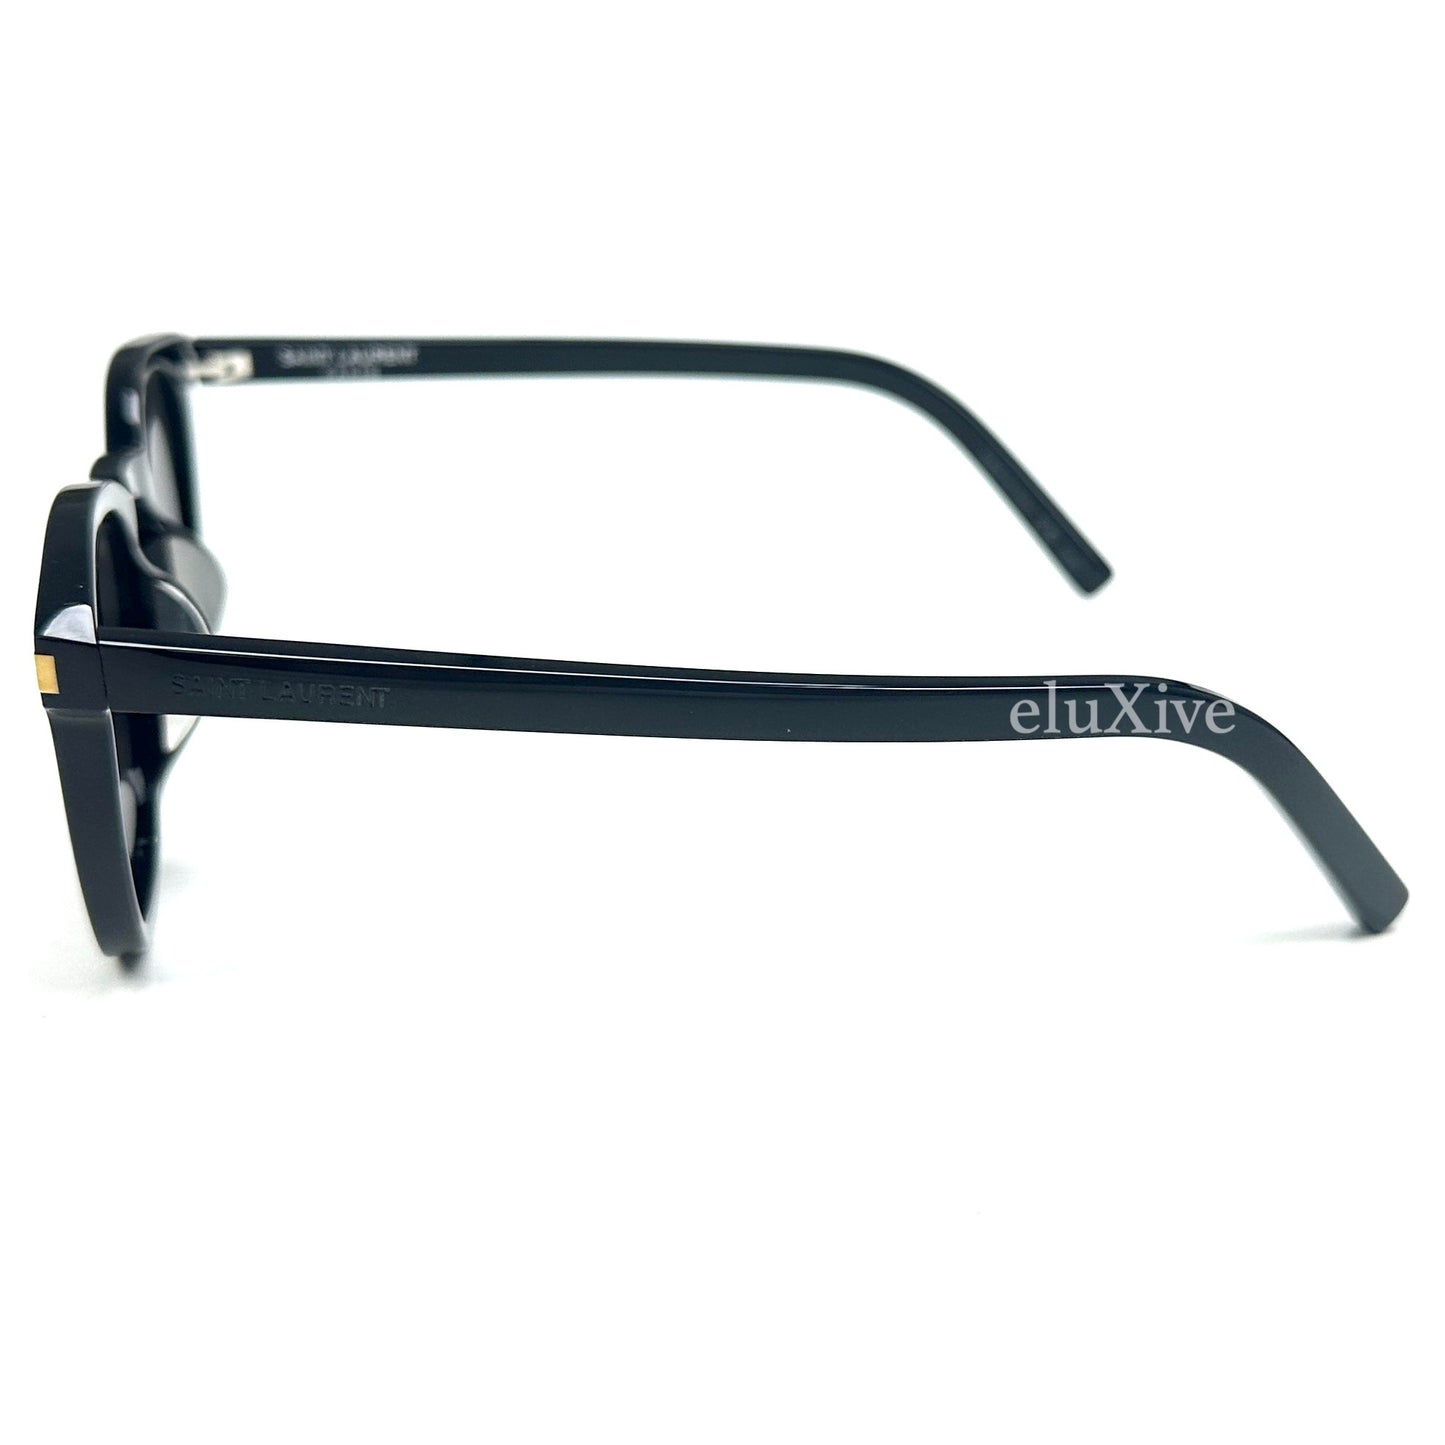 Saint Laurent  - SL28 Black Classic Rectangular Sunglasses